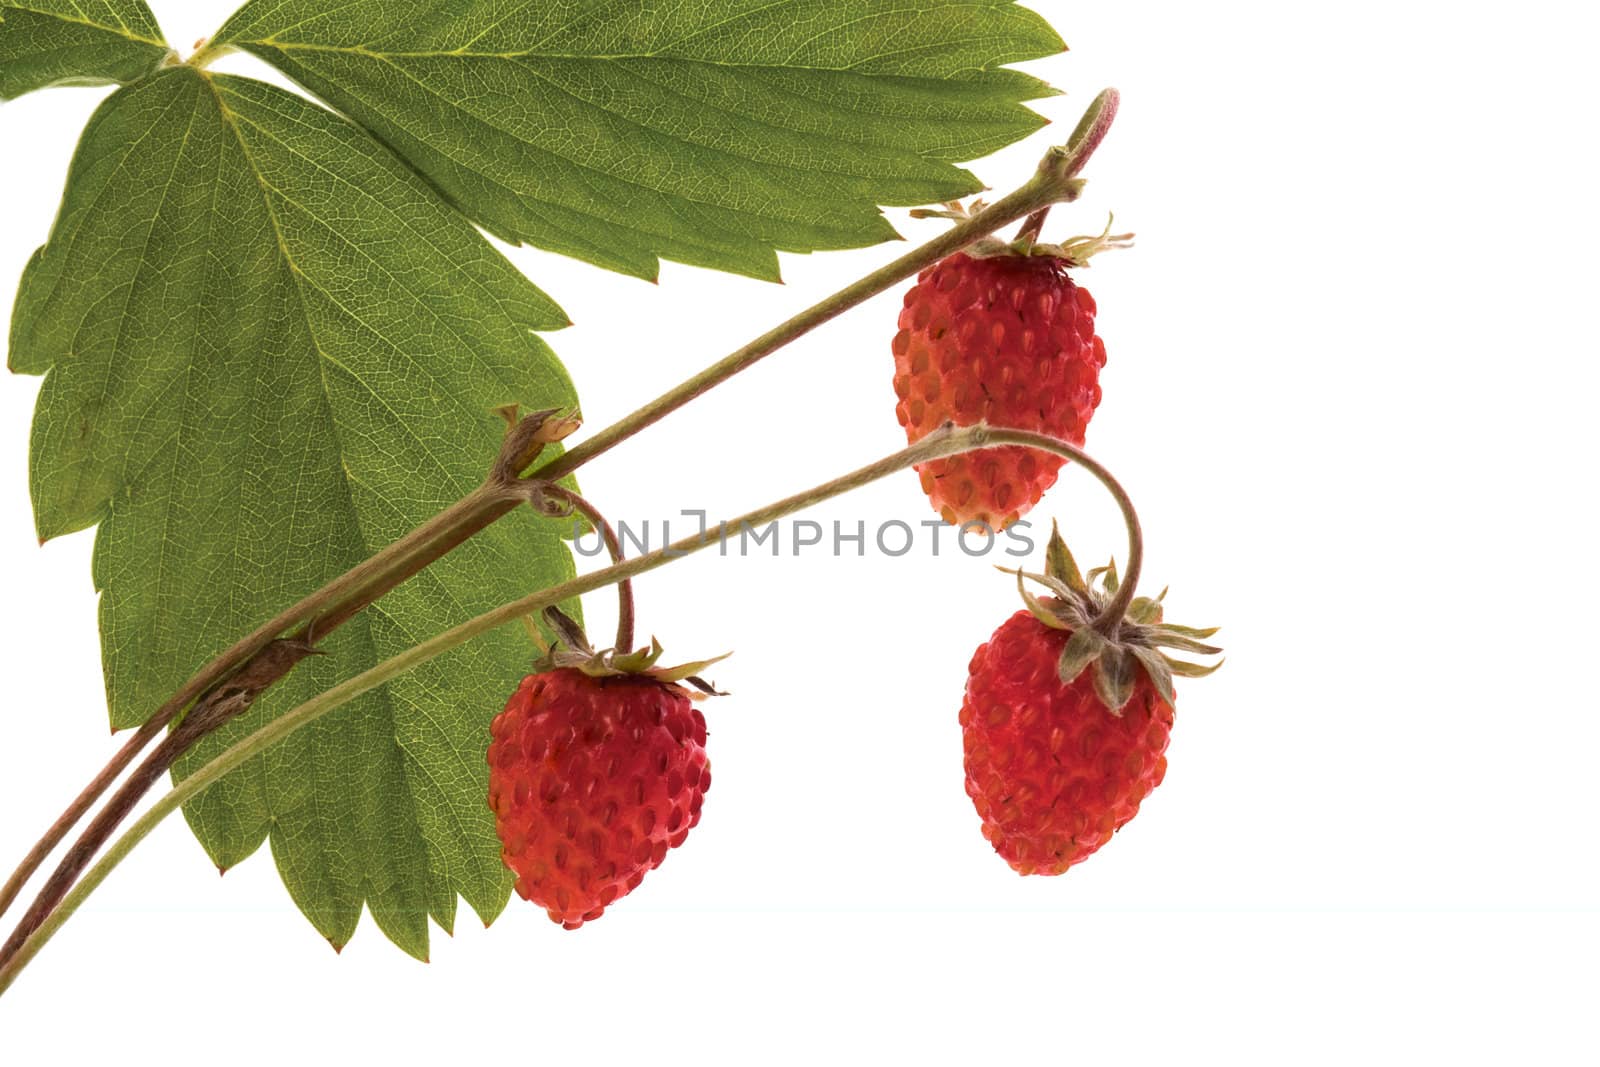 Wild strawberry by Ohotnik